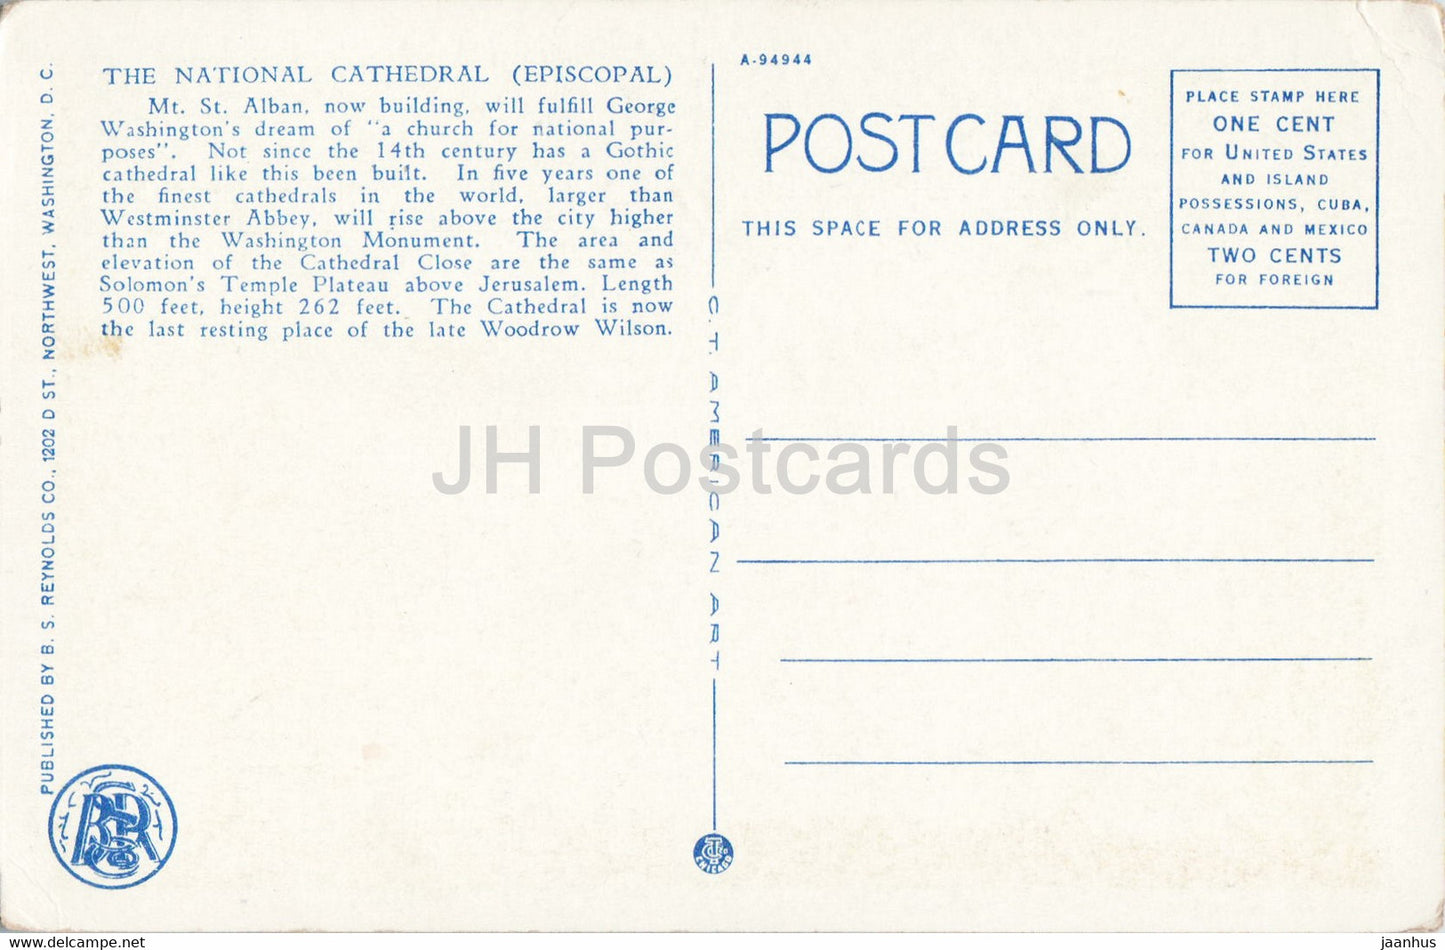 Washington DC - La Cathédrale nationale SS Pierre et Paul la nuit - carte postale ancienne - Etats-Unis - inutilisée